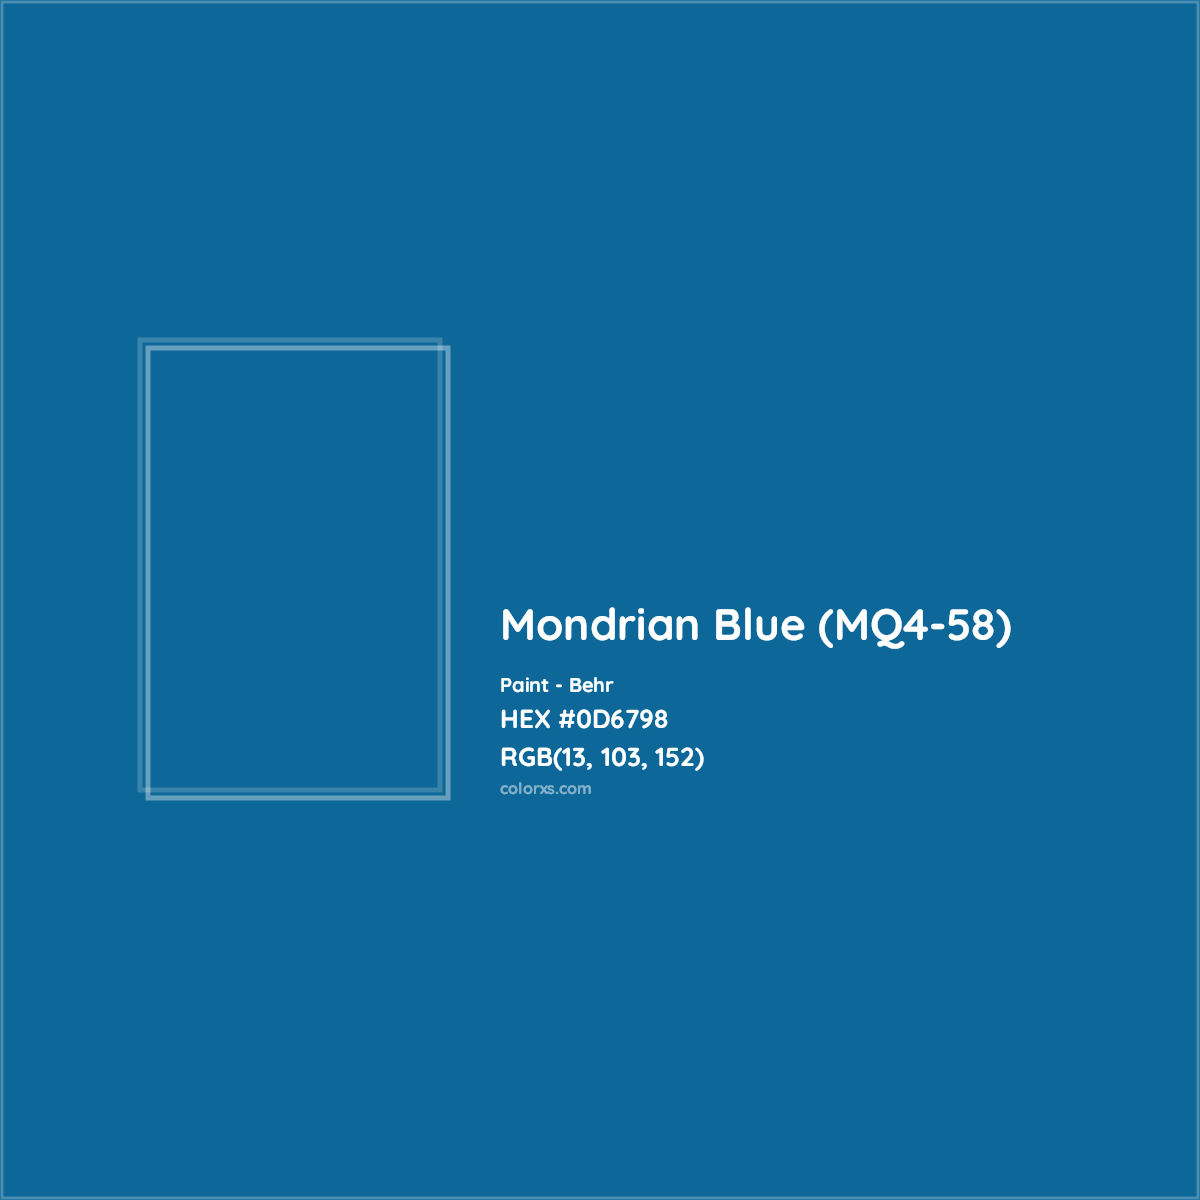 HEX #0D6798 Mondrian Blue (MQ4-58) Paint Behr - Color Code